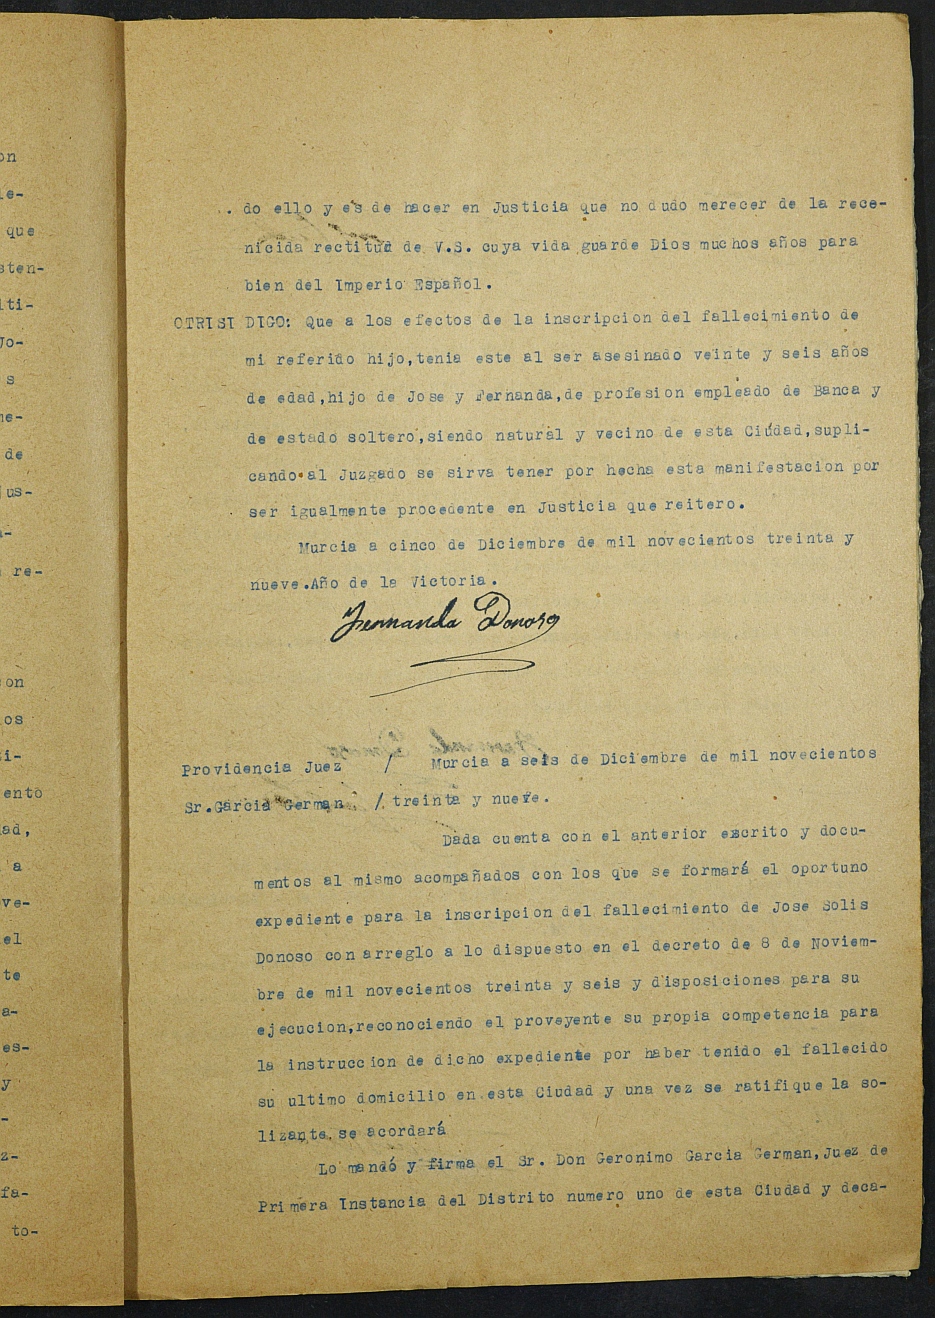 Expediente nº 23/1939 del Juzgado de Primera Instancia de Murcia para la inscripción en el Registro Civil por la defunción en el frente de José Solís Donoso.